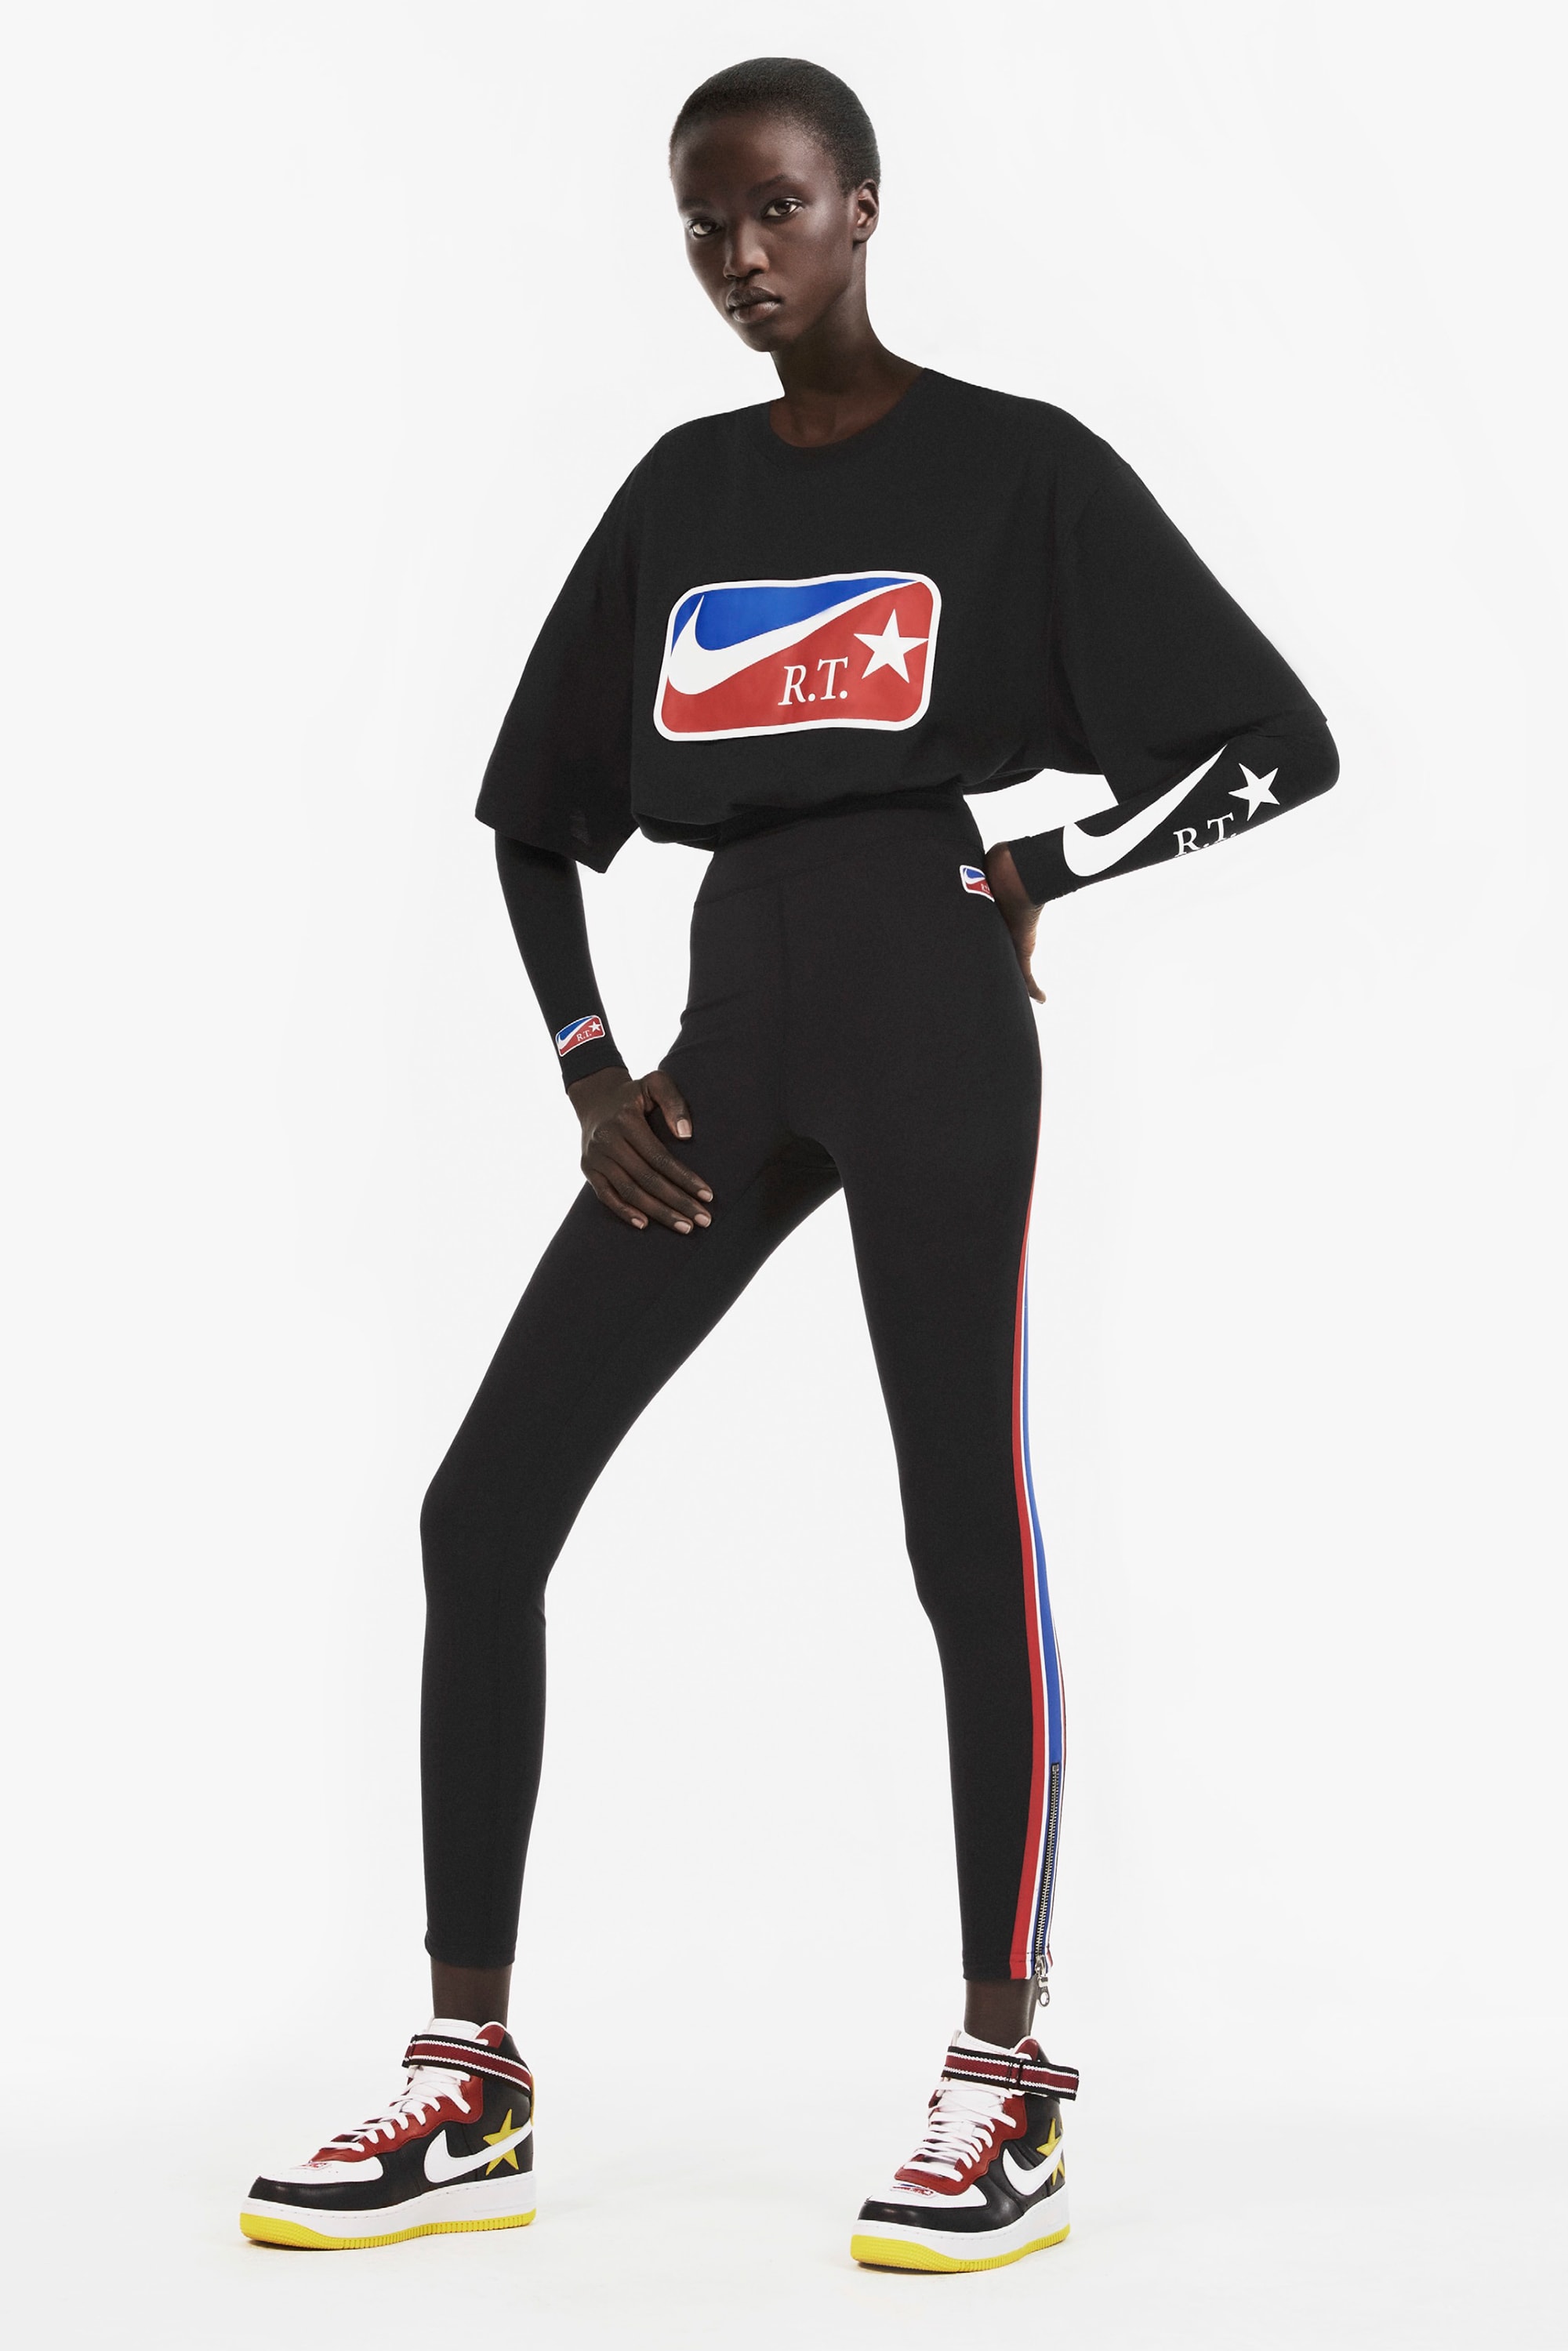 元 Givenchy のリカルド・ティッシ x Nike による架空のバスケチームをフィーチャーした2018年春コレクションが登場　ナイキ バスケ バスケットボール hypebeast